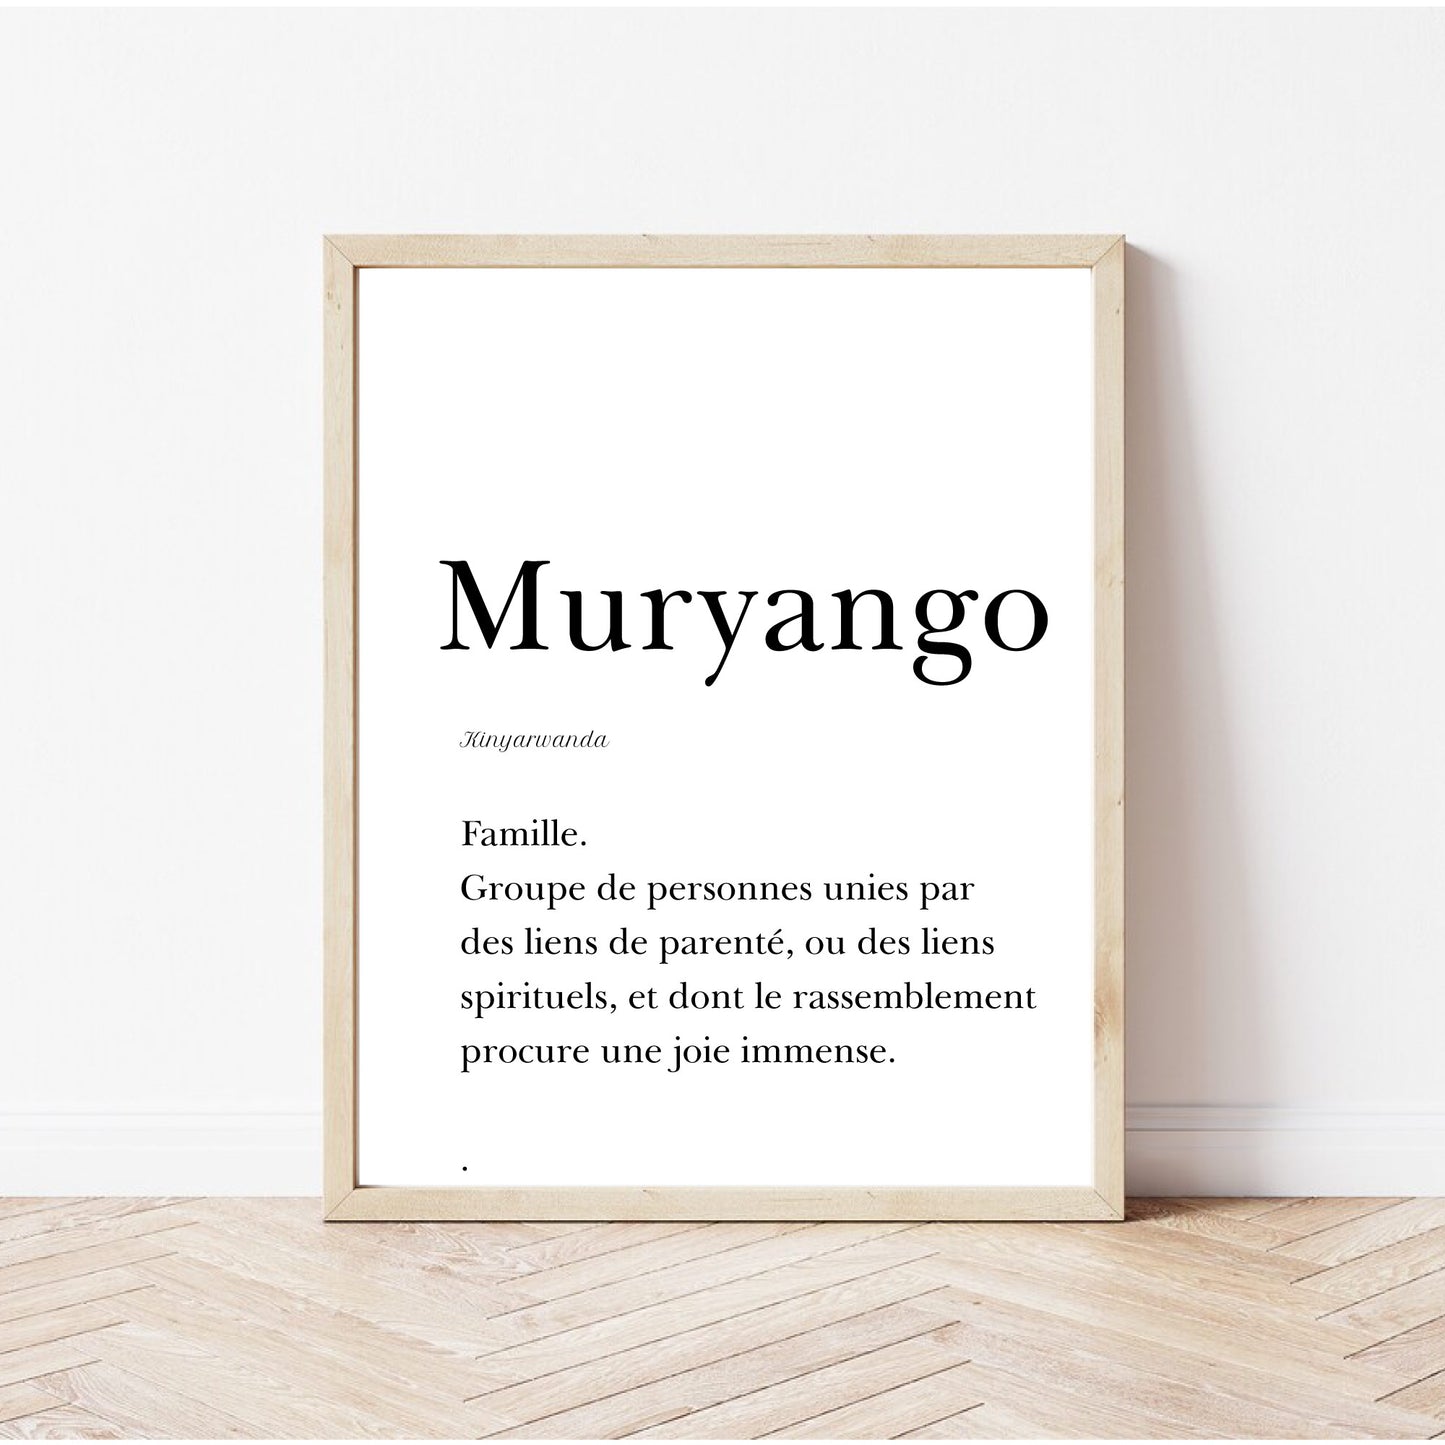 Family in Kinyarwanda, "Muryango" poster